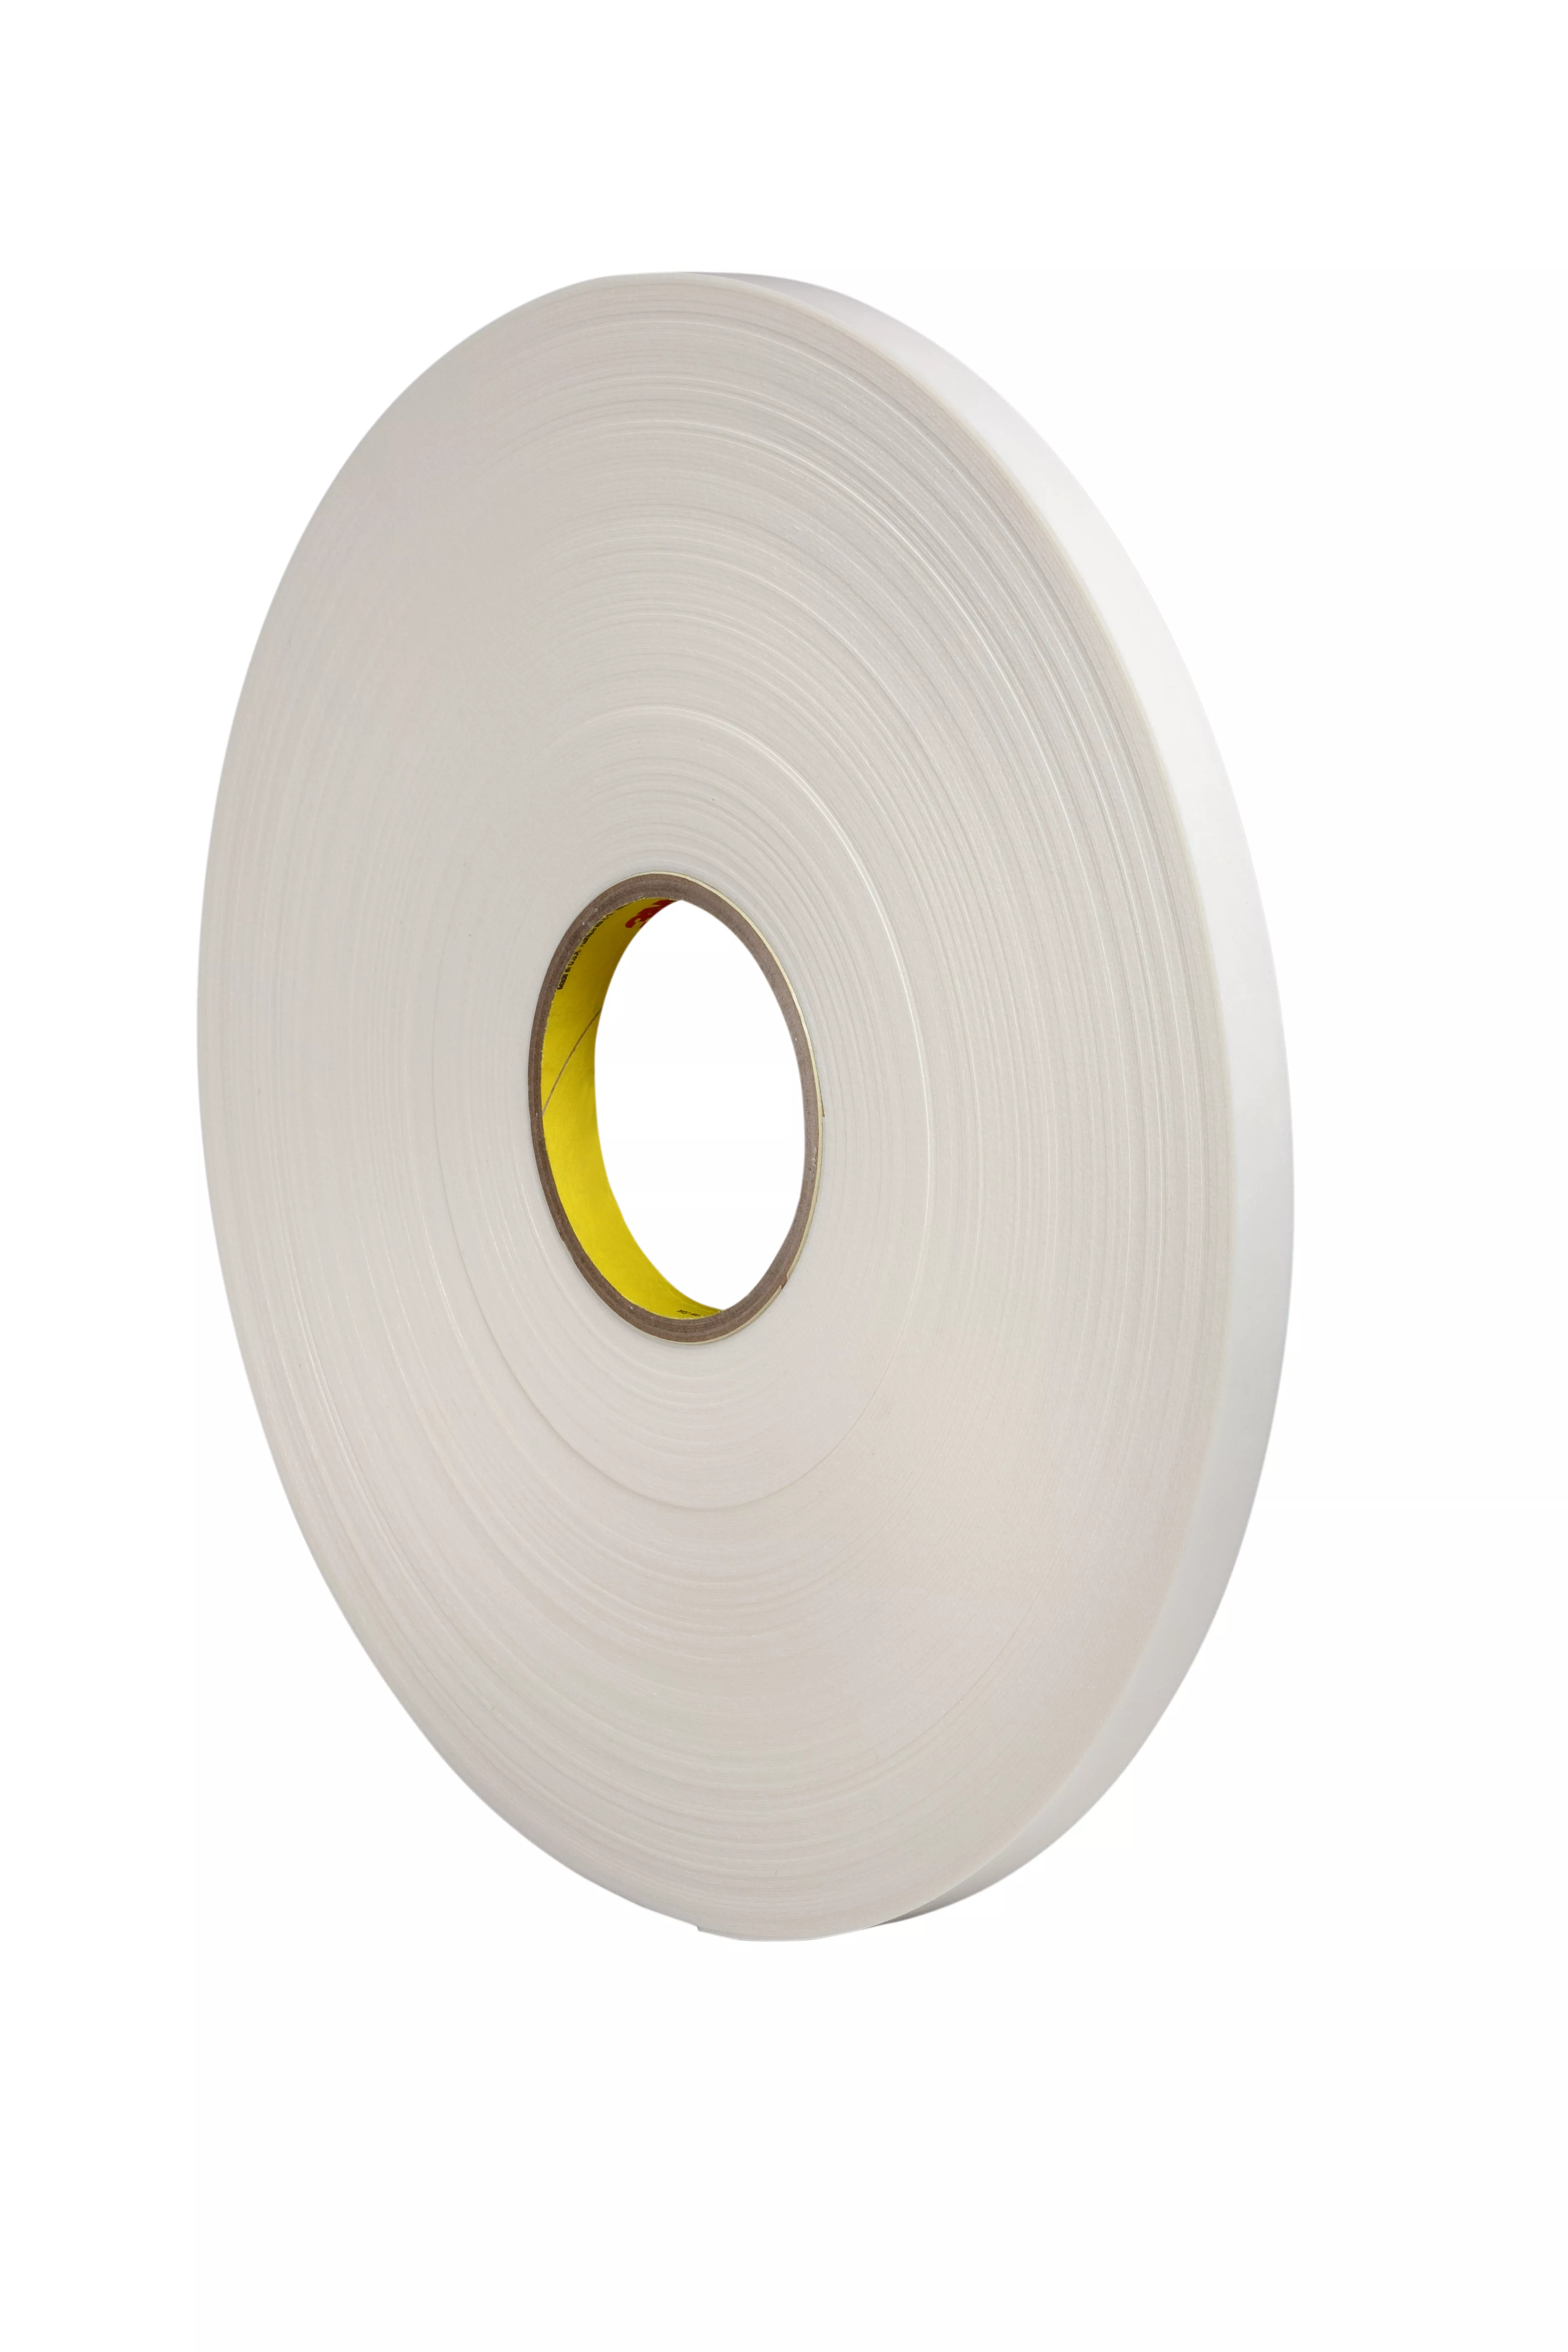 3M™ Double Coated Polyethylene Foam Tape 4462, White, 1/2 in x 72 yd, 31
mil, 18 Roll/Case